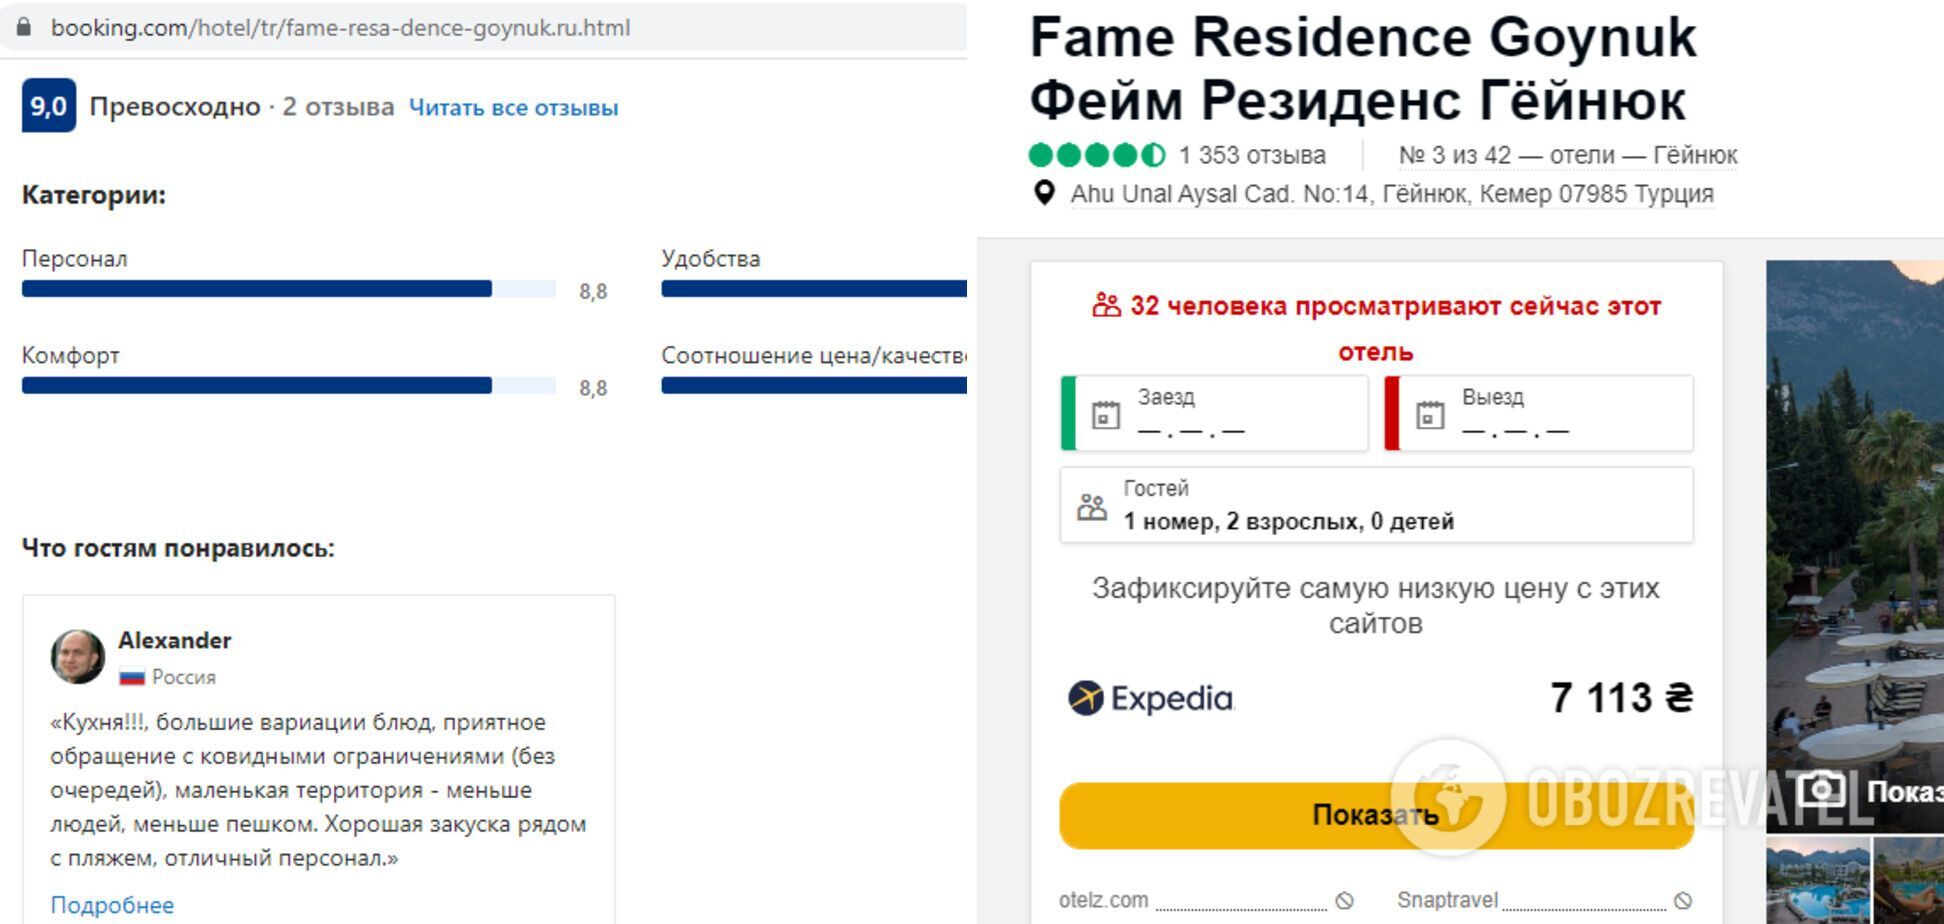 Fame Residence Goynuk имеет высокий рейтинг.